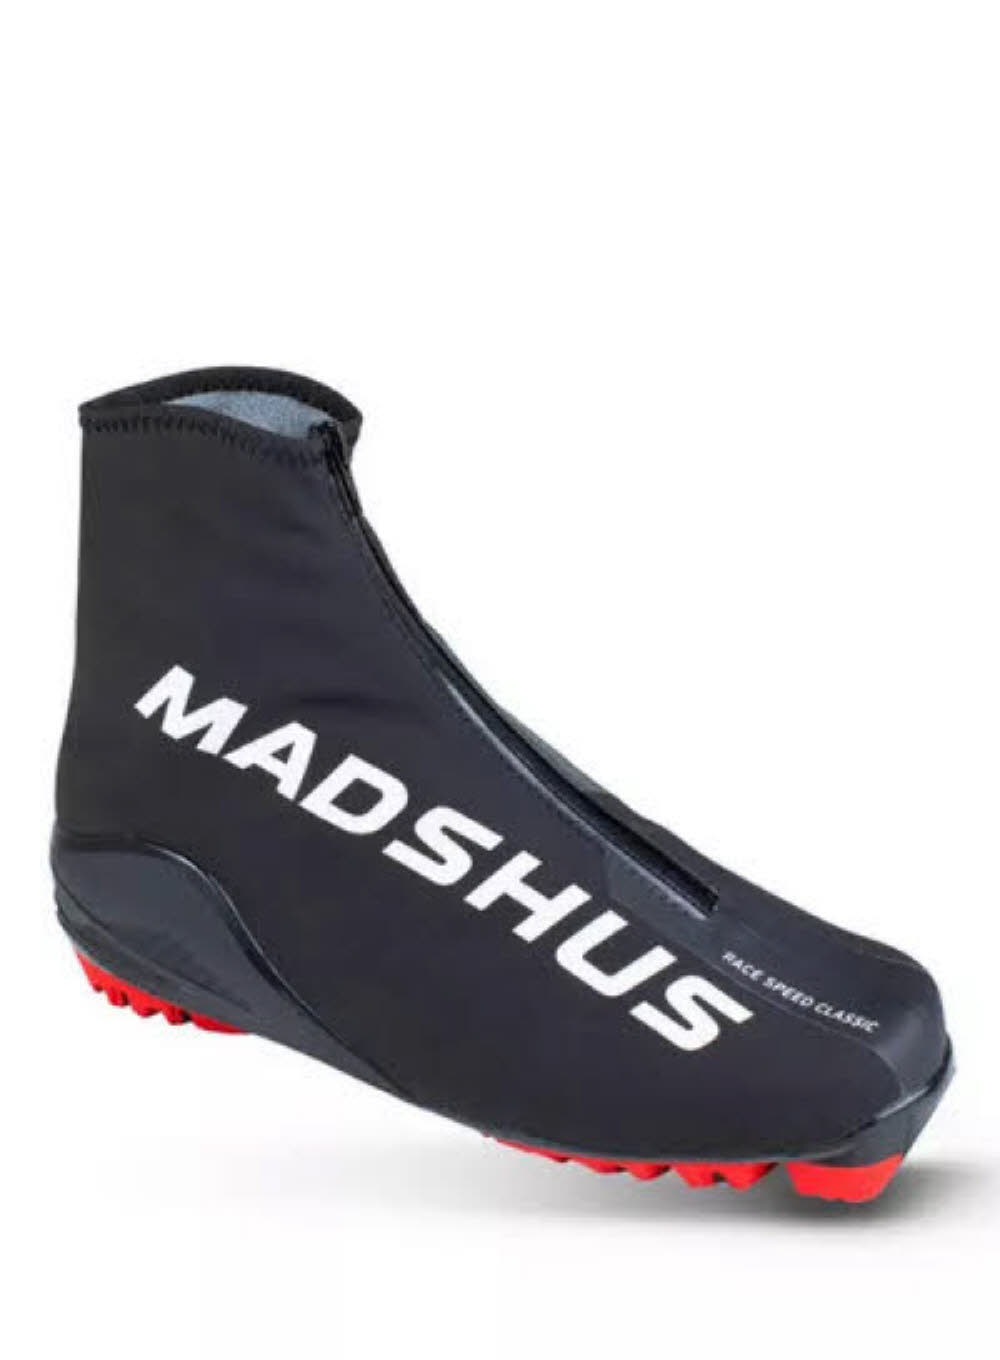 Madshus Race Speed Classic Boot Herren Langlaufschuhe Langlauf Klassisch schwarz